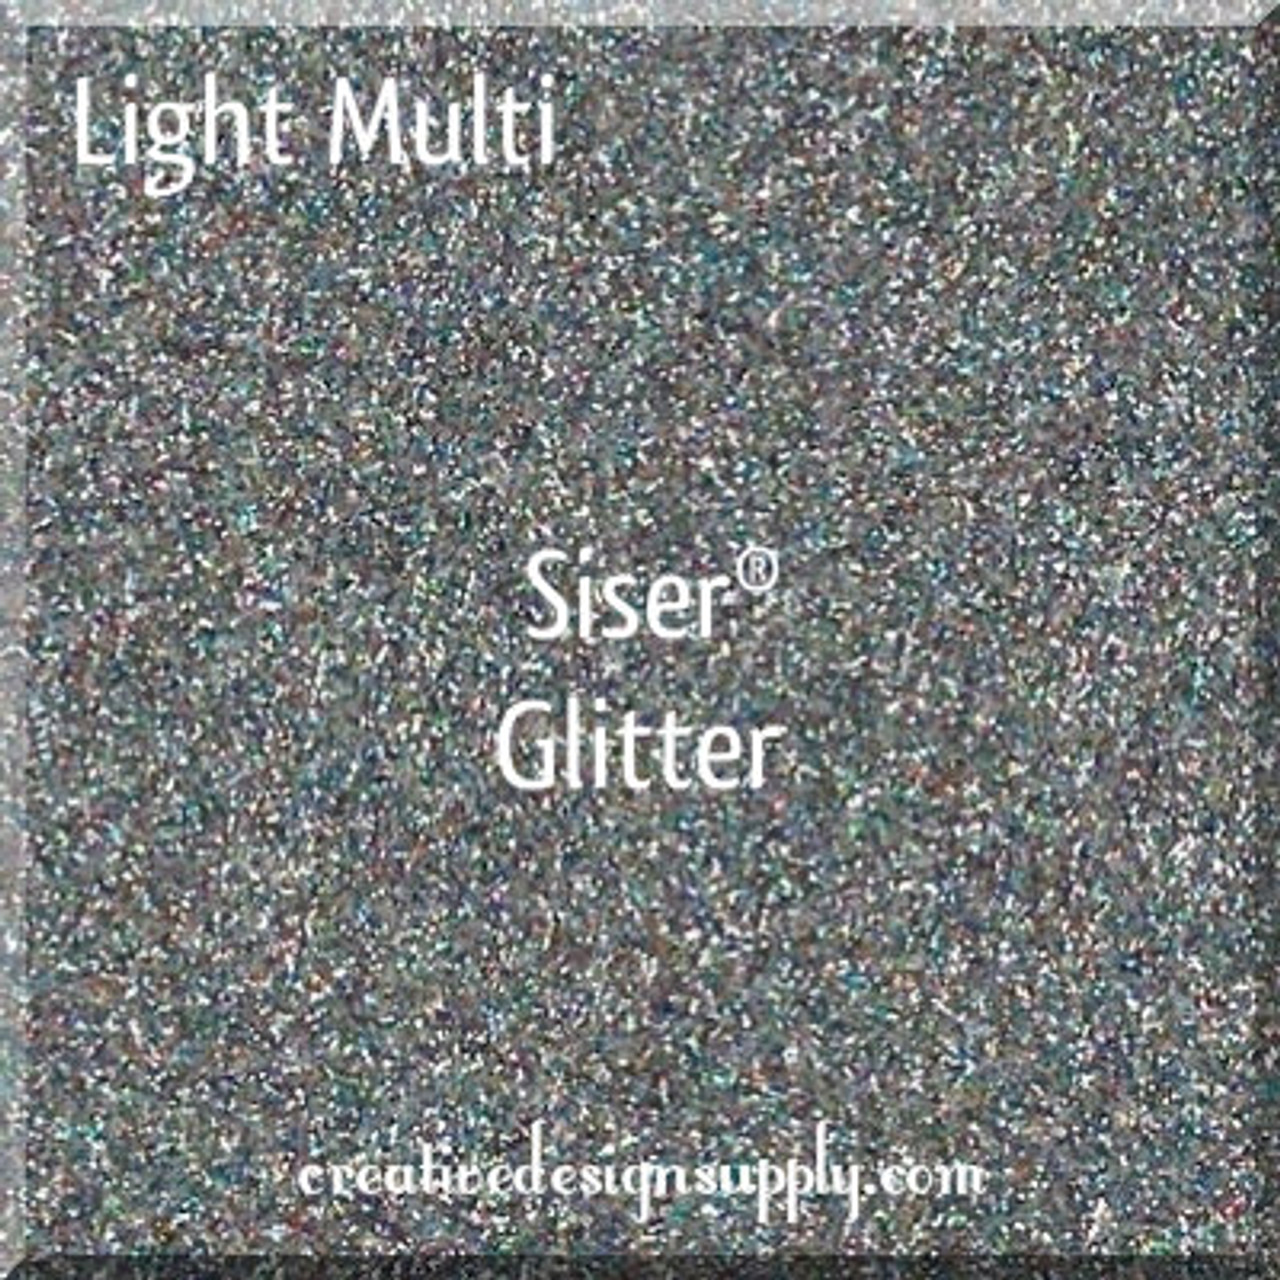 Light Multi Siser Glitter 20"